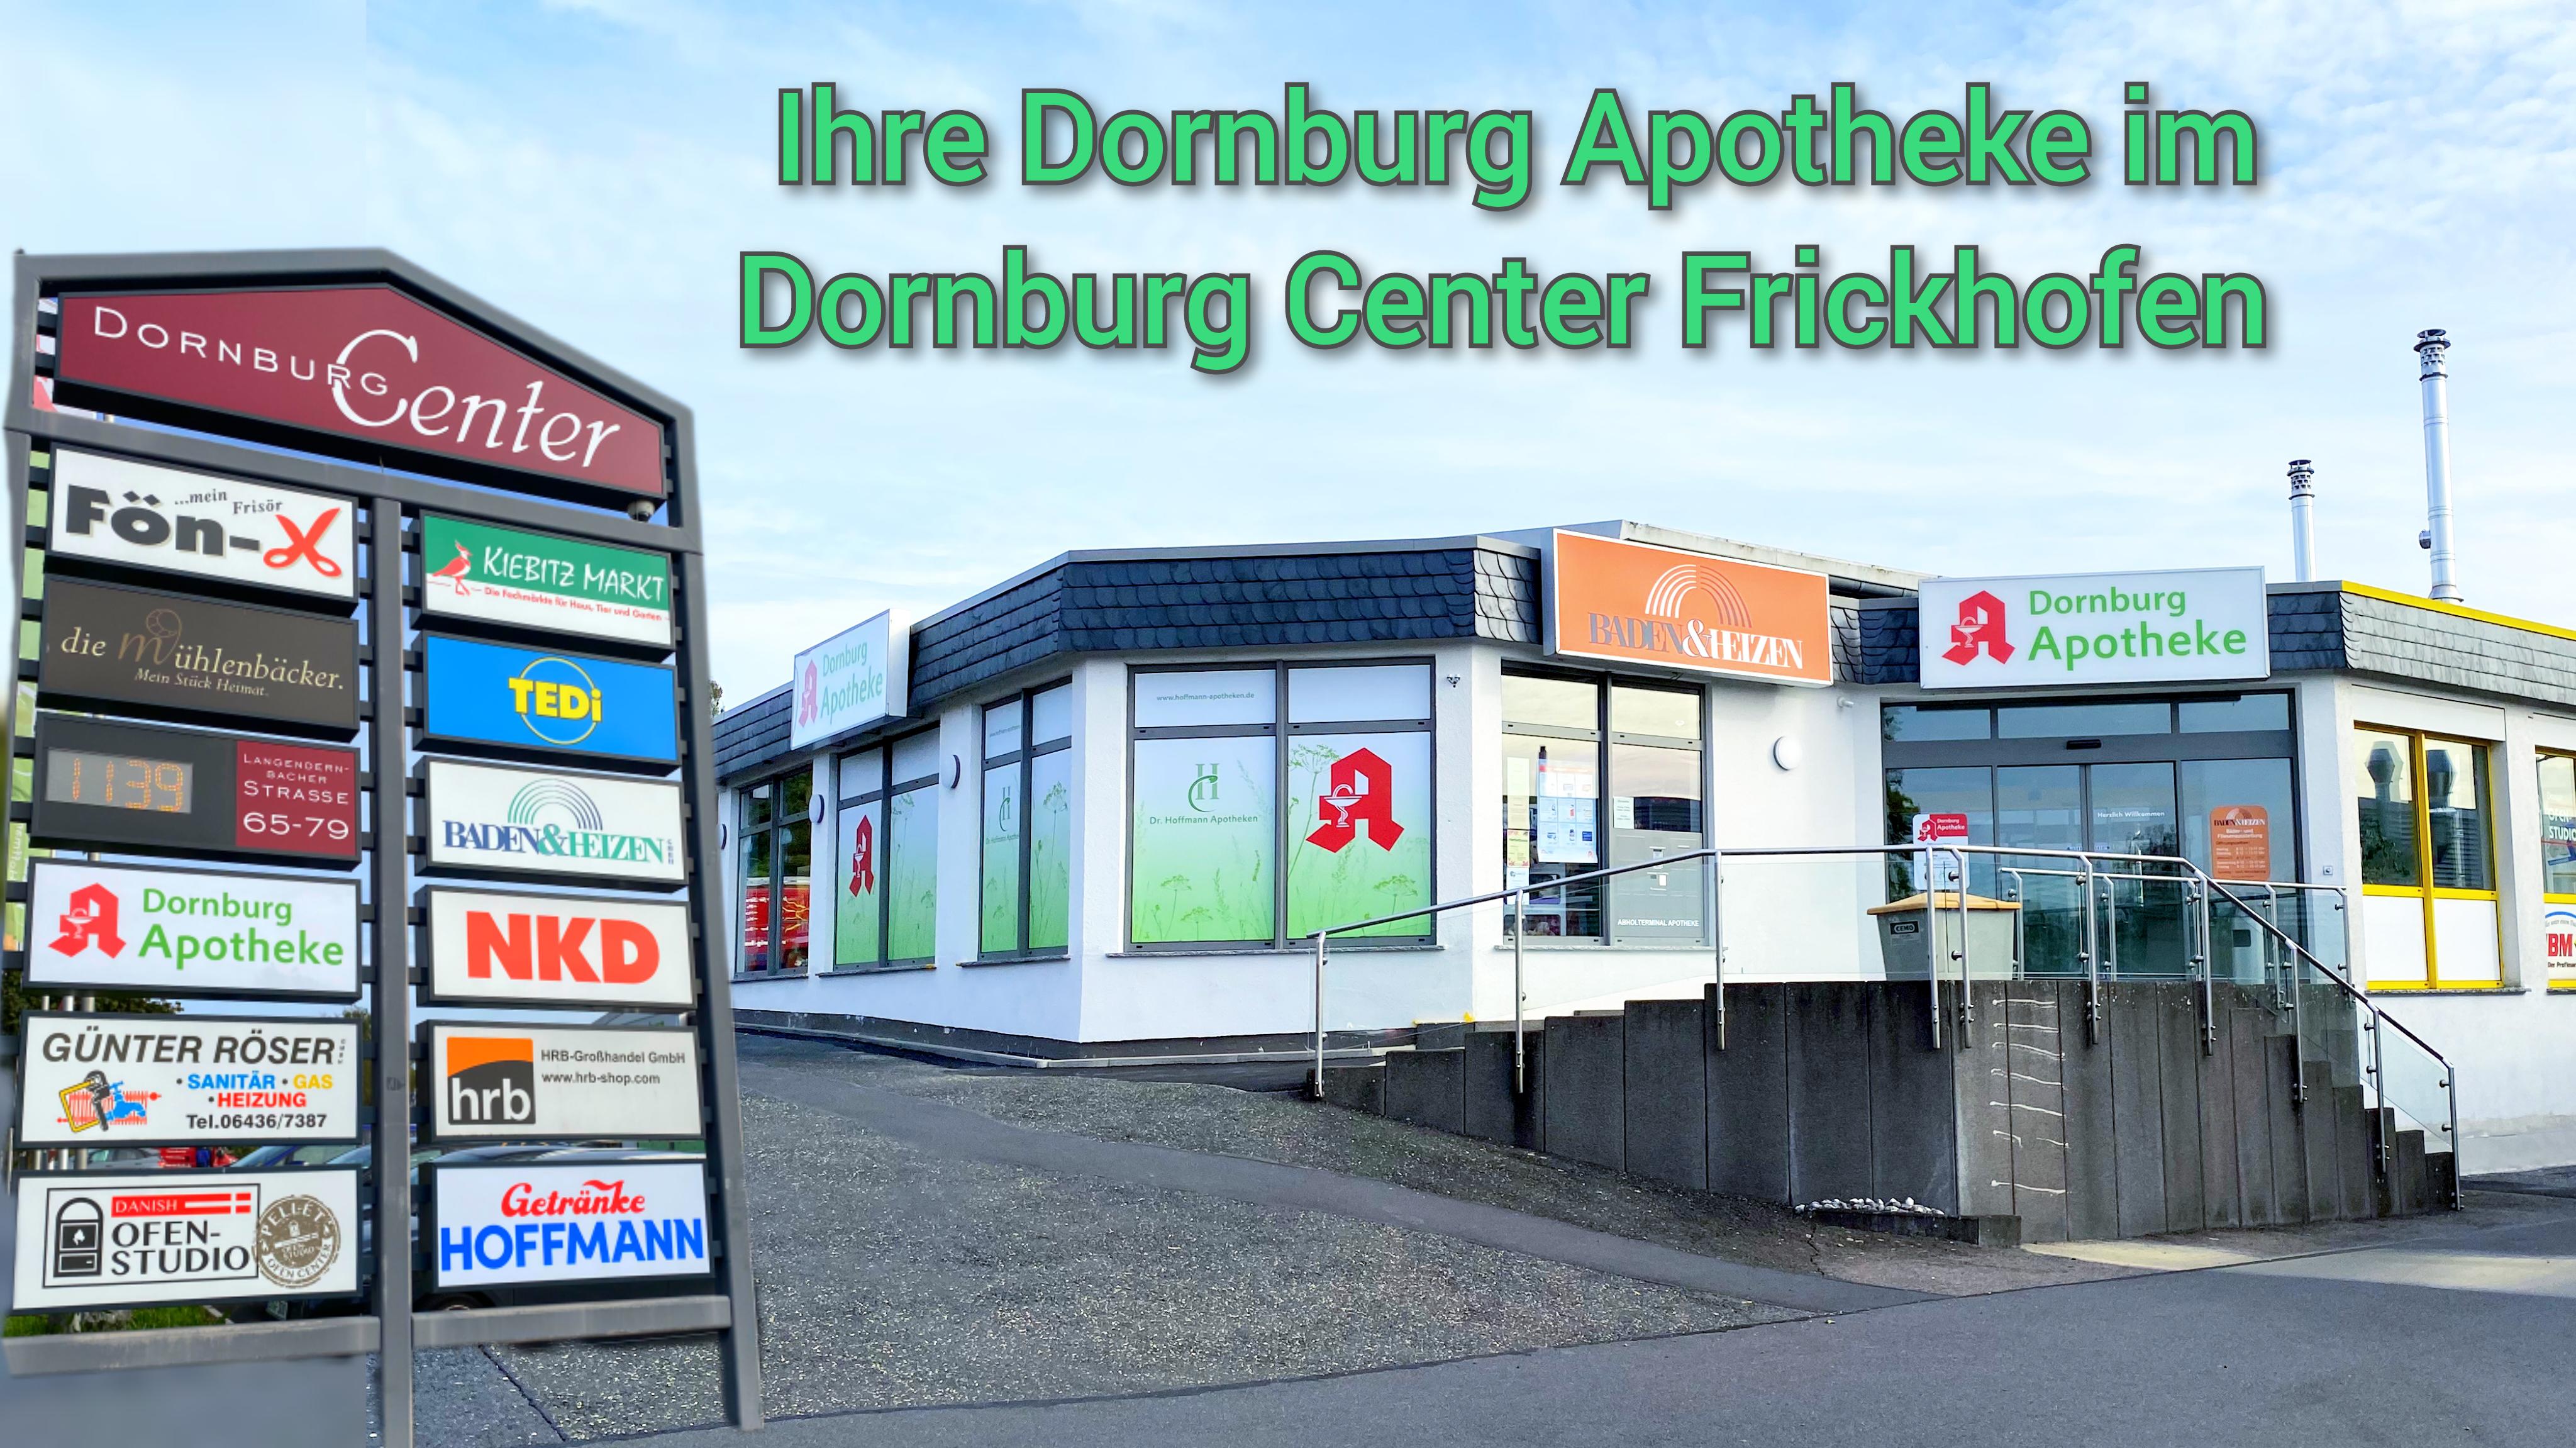 Bild 1 Dornburg-Apotheke in Frickhofen